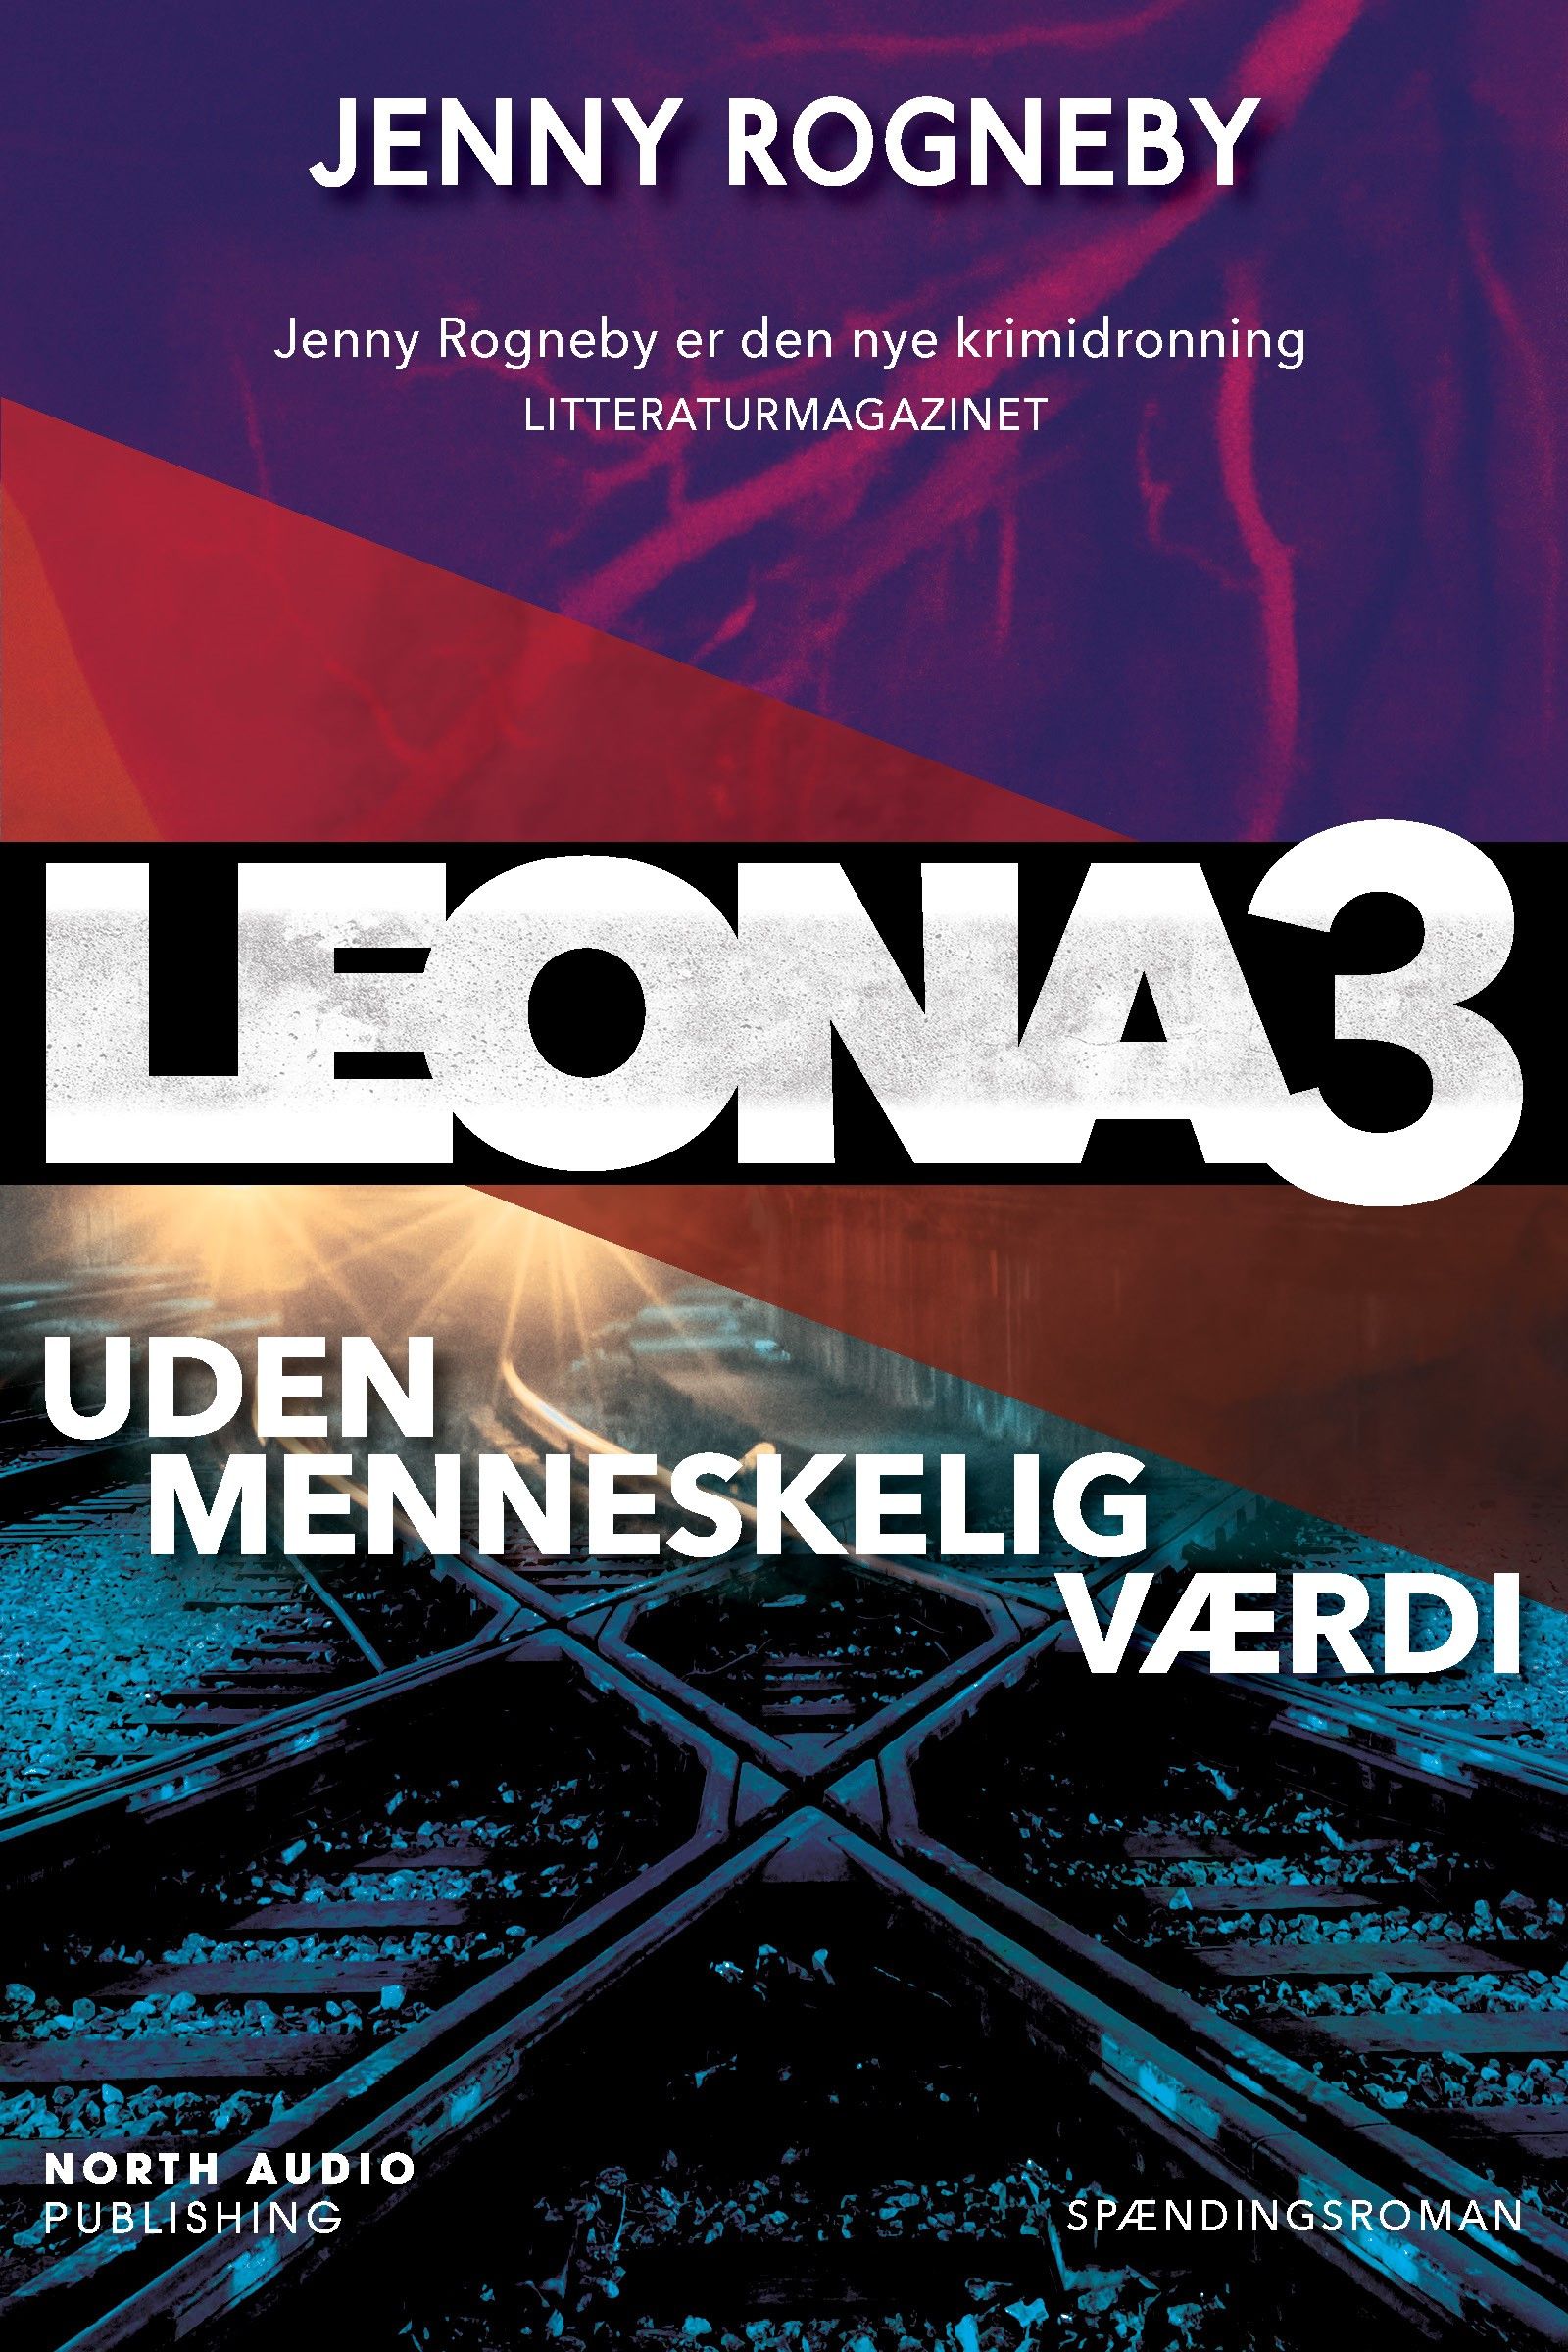 Leona - uden menneskelig værdi, e-bok av Jenny Rogneby